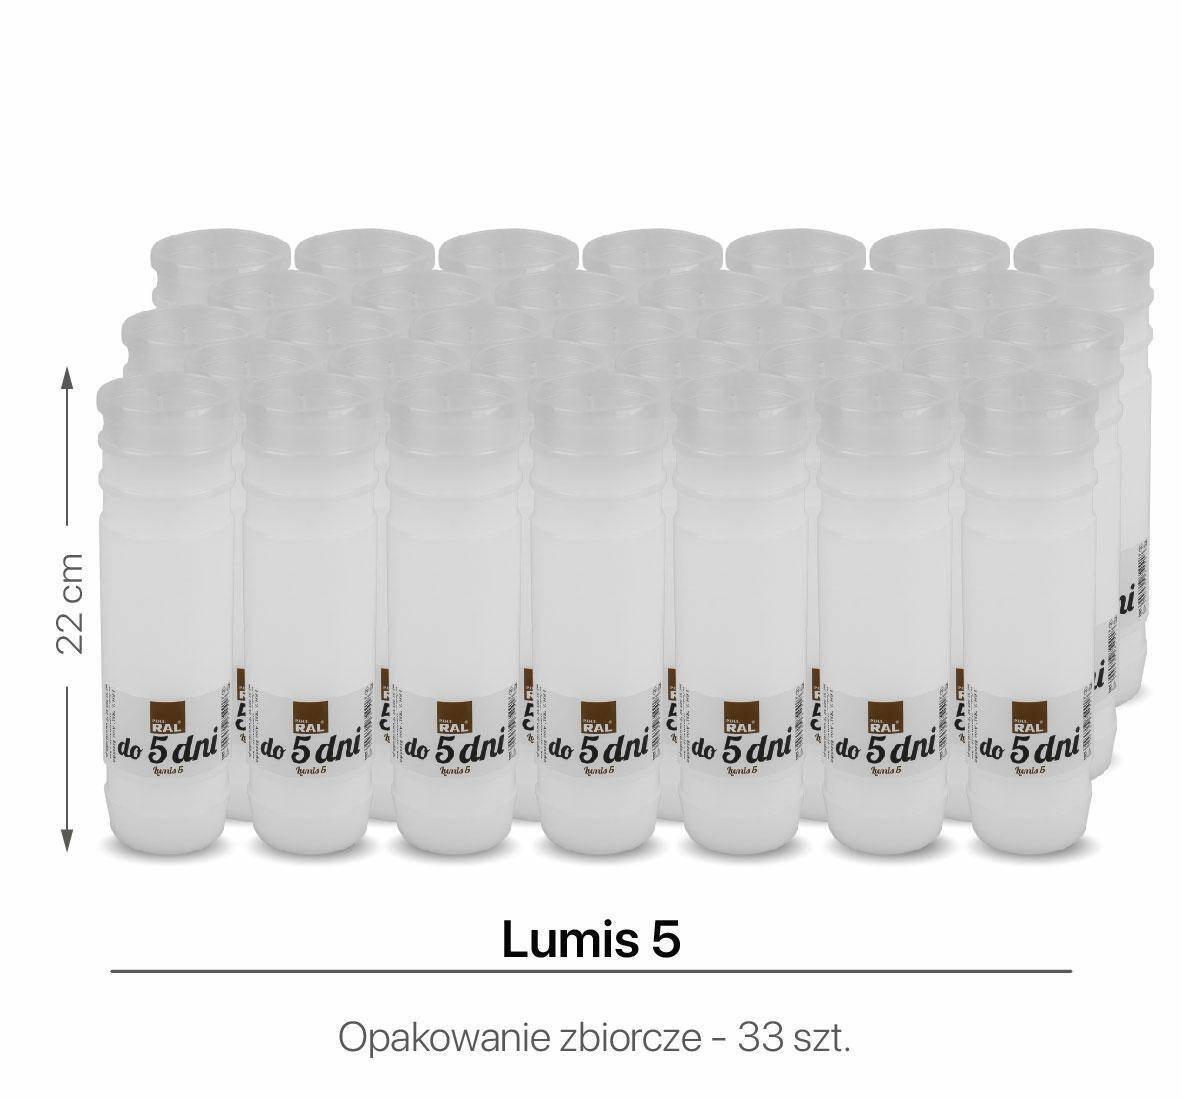 Wkłady do zniczy Lumis 5 20 cm (Zdjęcie 1)